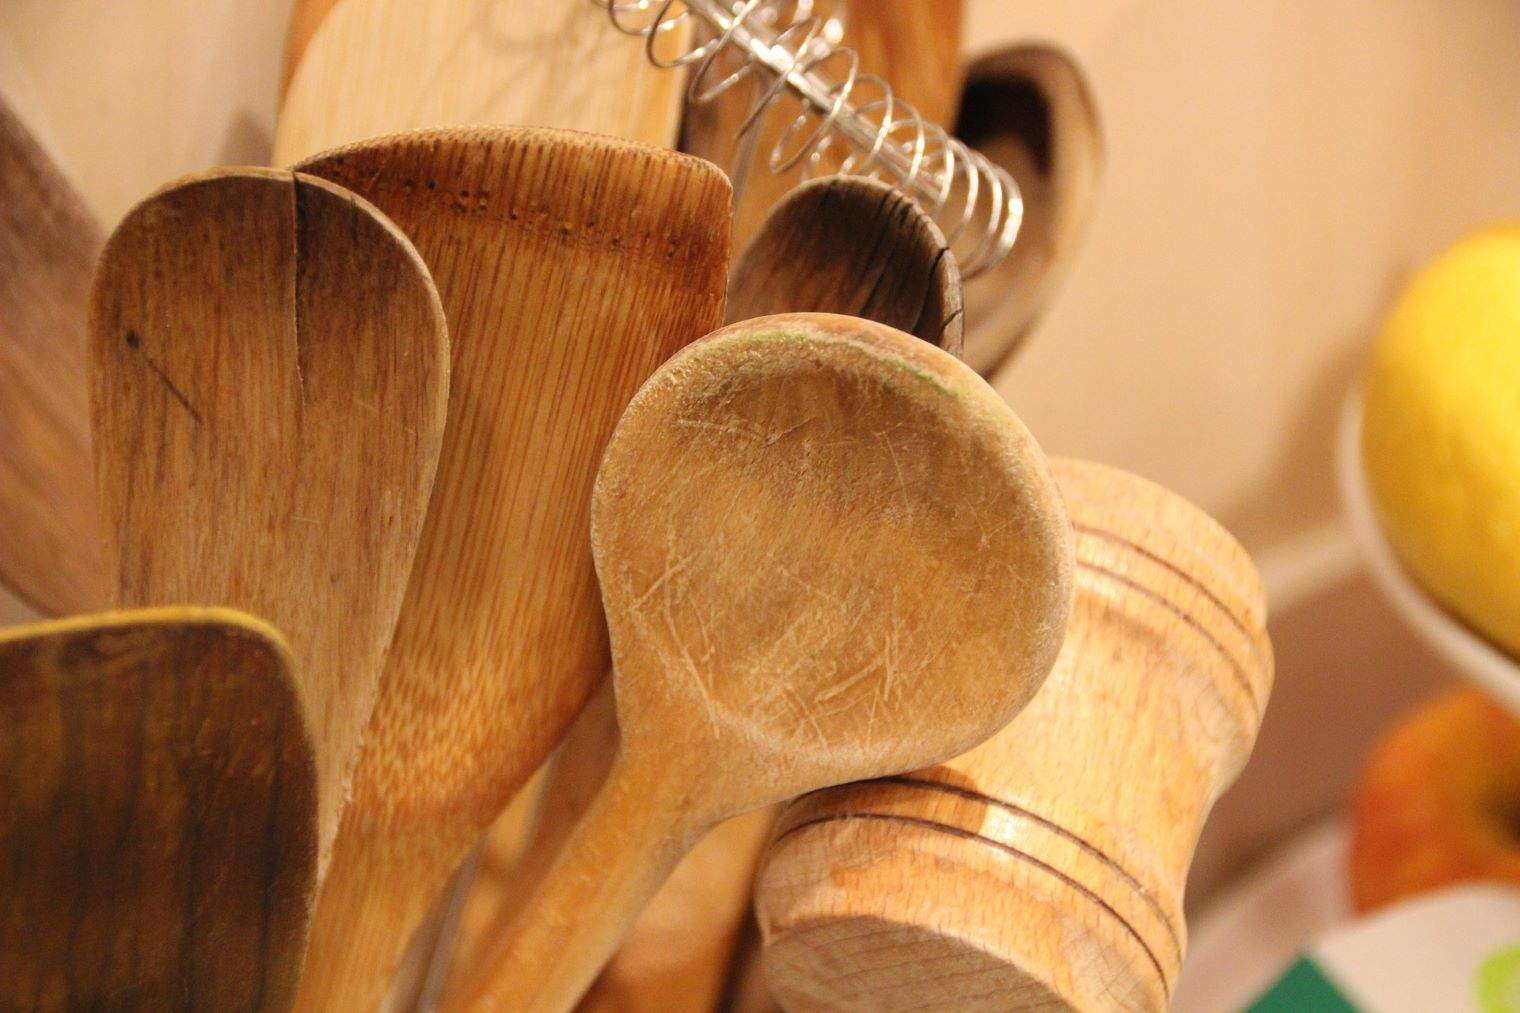 Adiós a los utensilios de madera en la cocina: los expertos alertan del riesgo que suponen